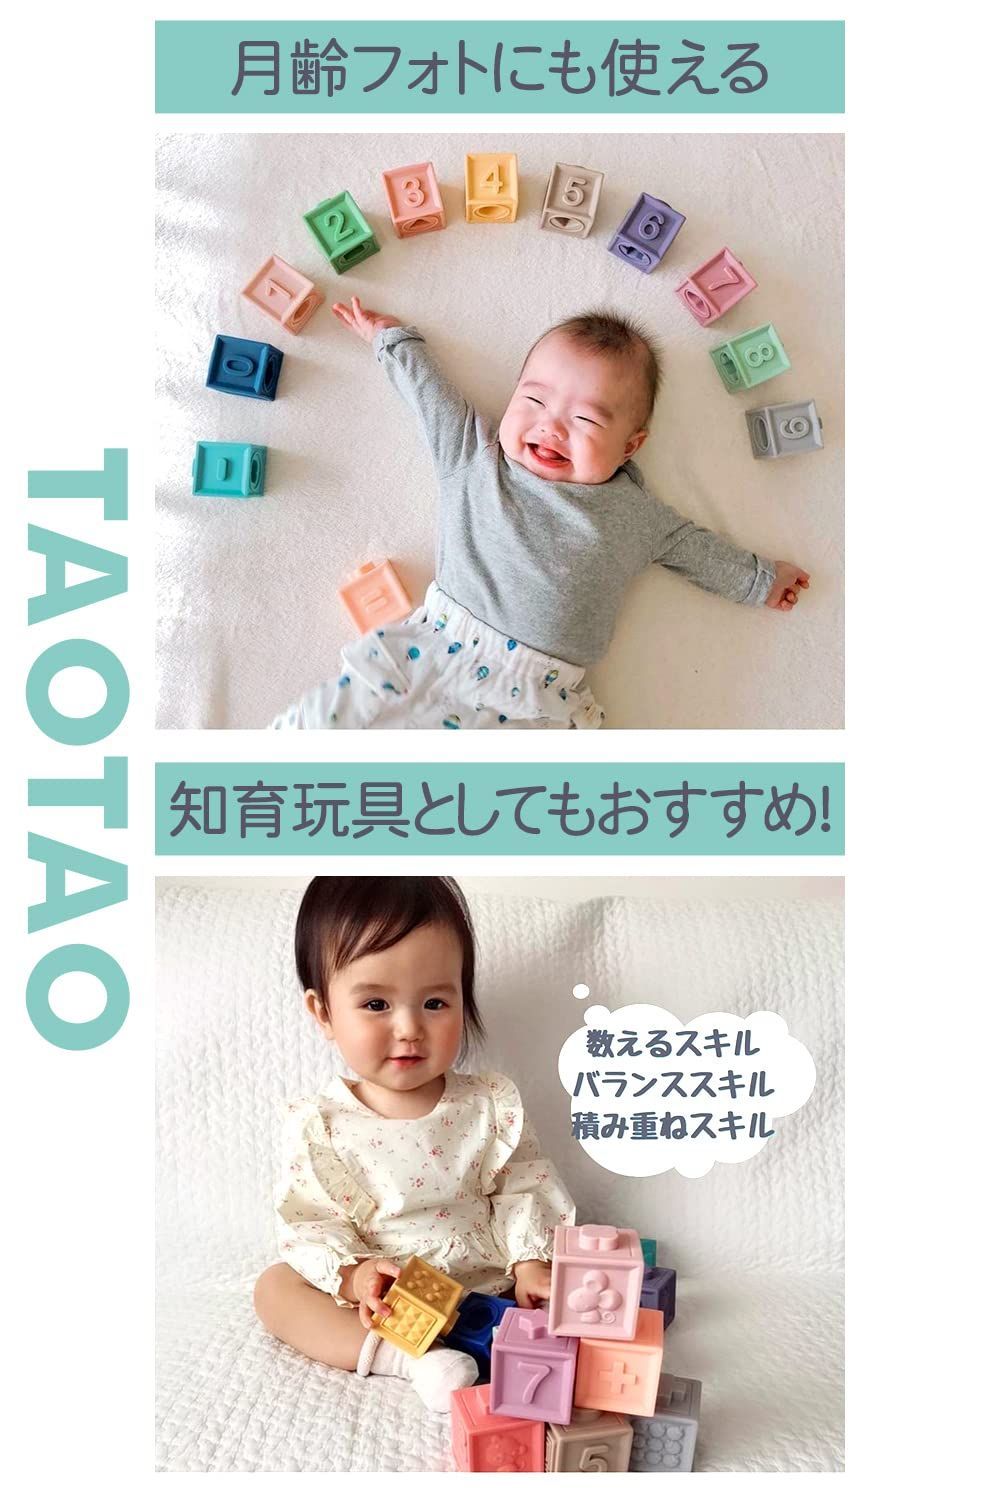 お得定番 TAOTAO 積み木 みて・さわって・たのしい パステルキューブ 赤ちゃん おも 4975.05円 おもちゃ 